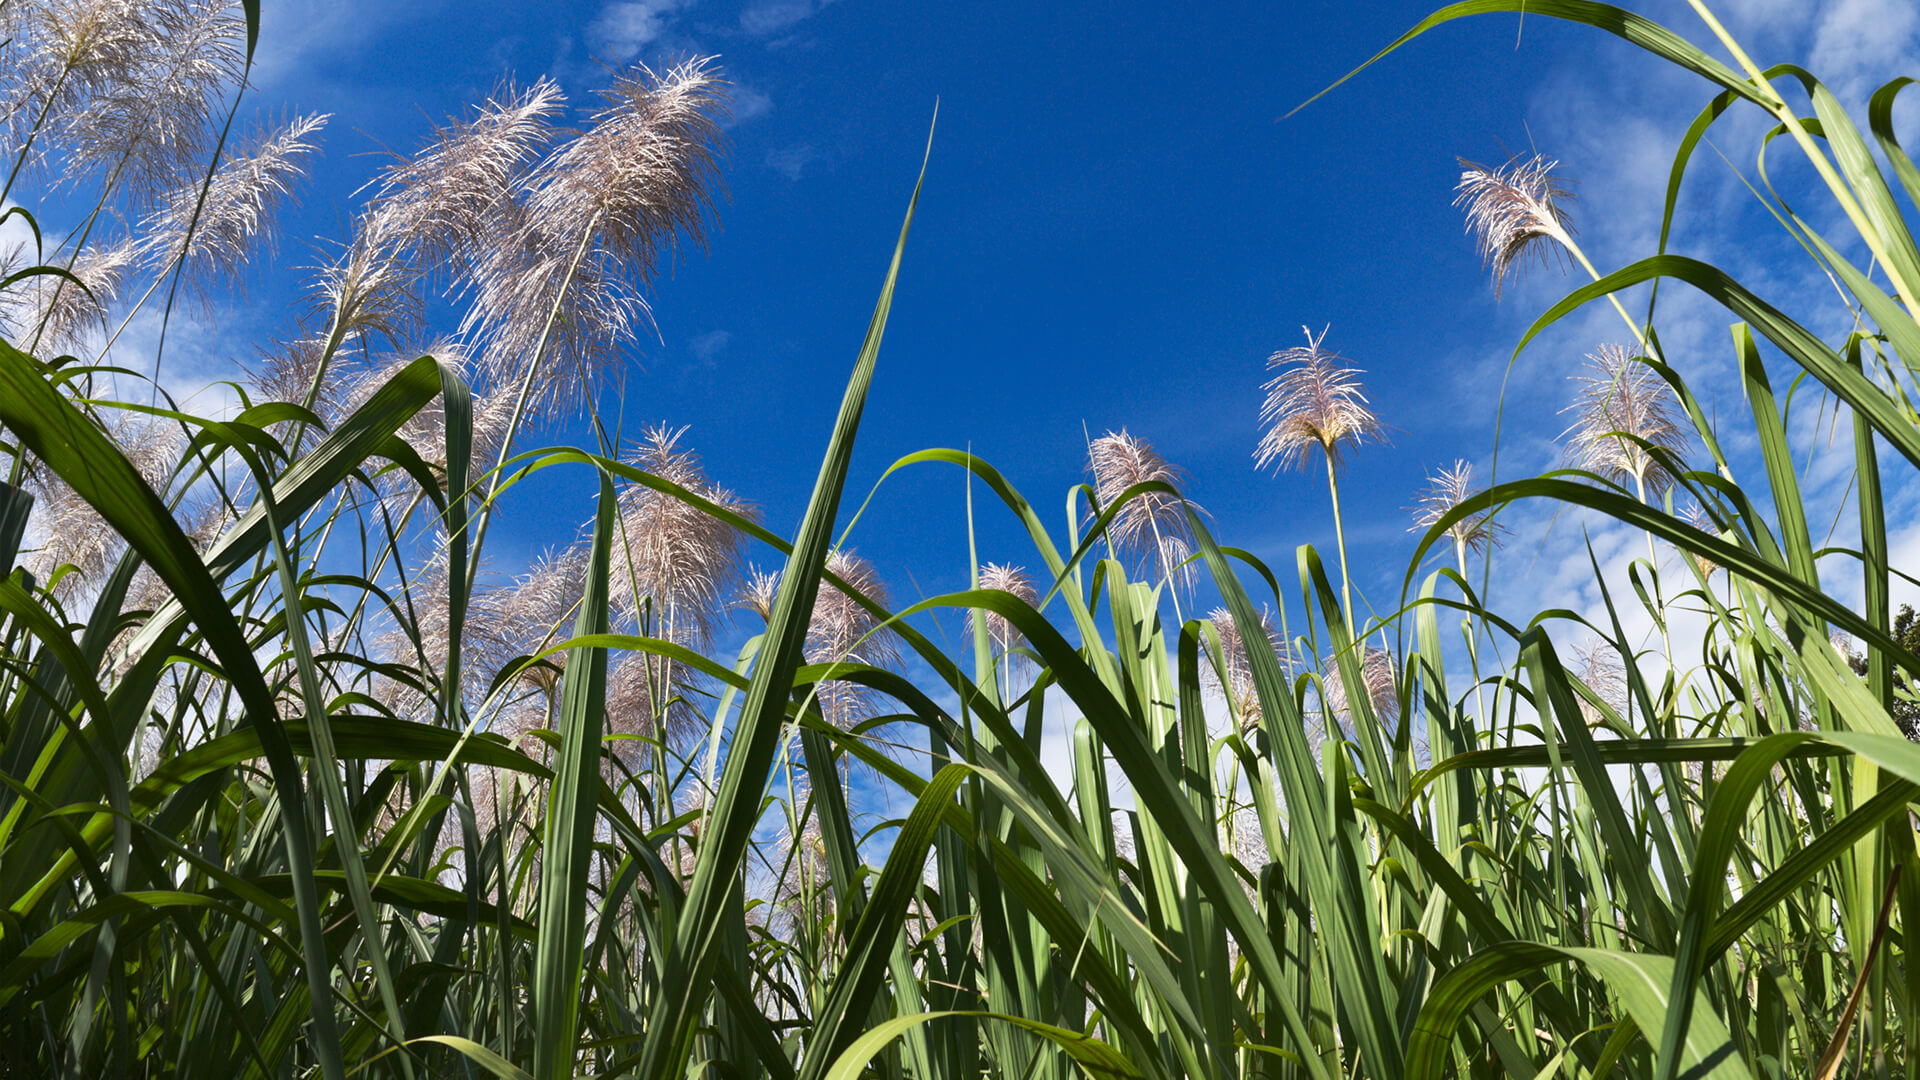 sugarcane field with blue skies